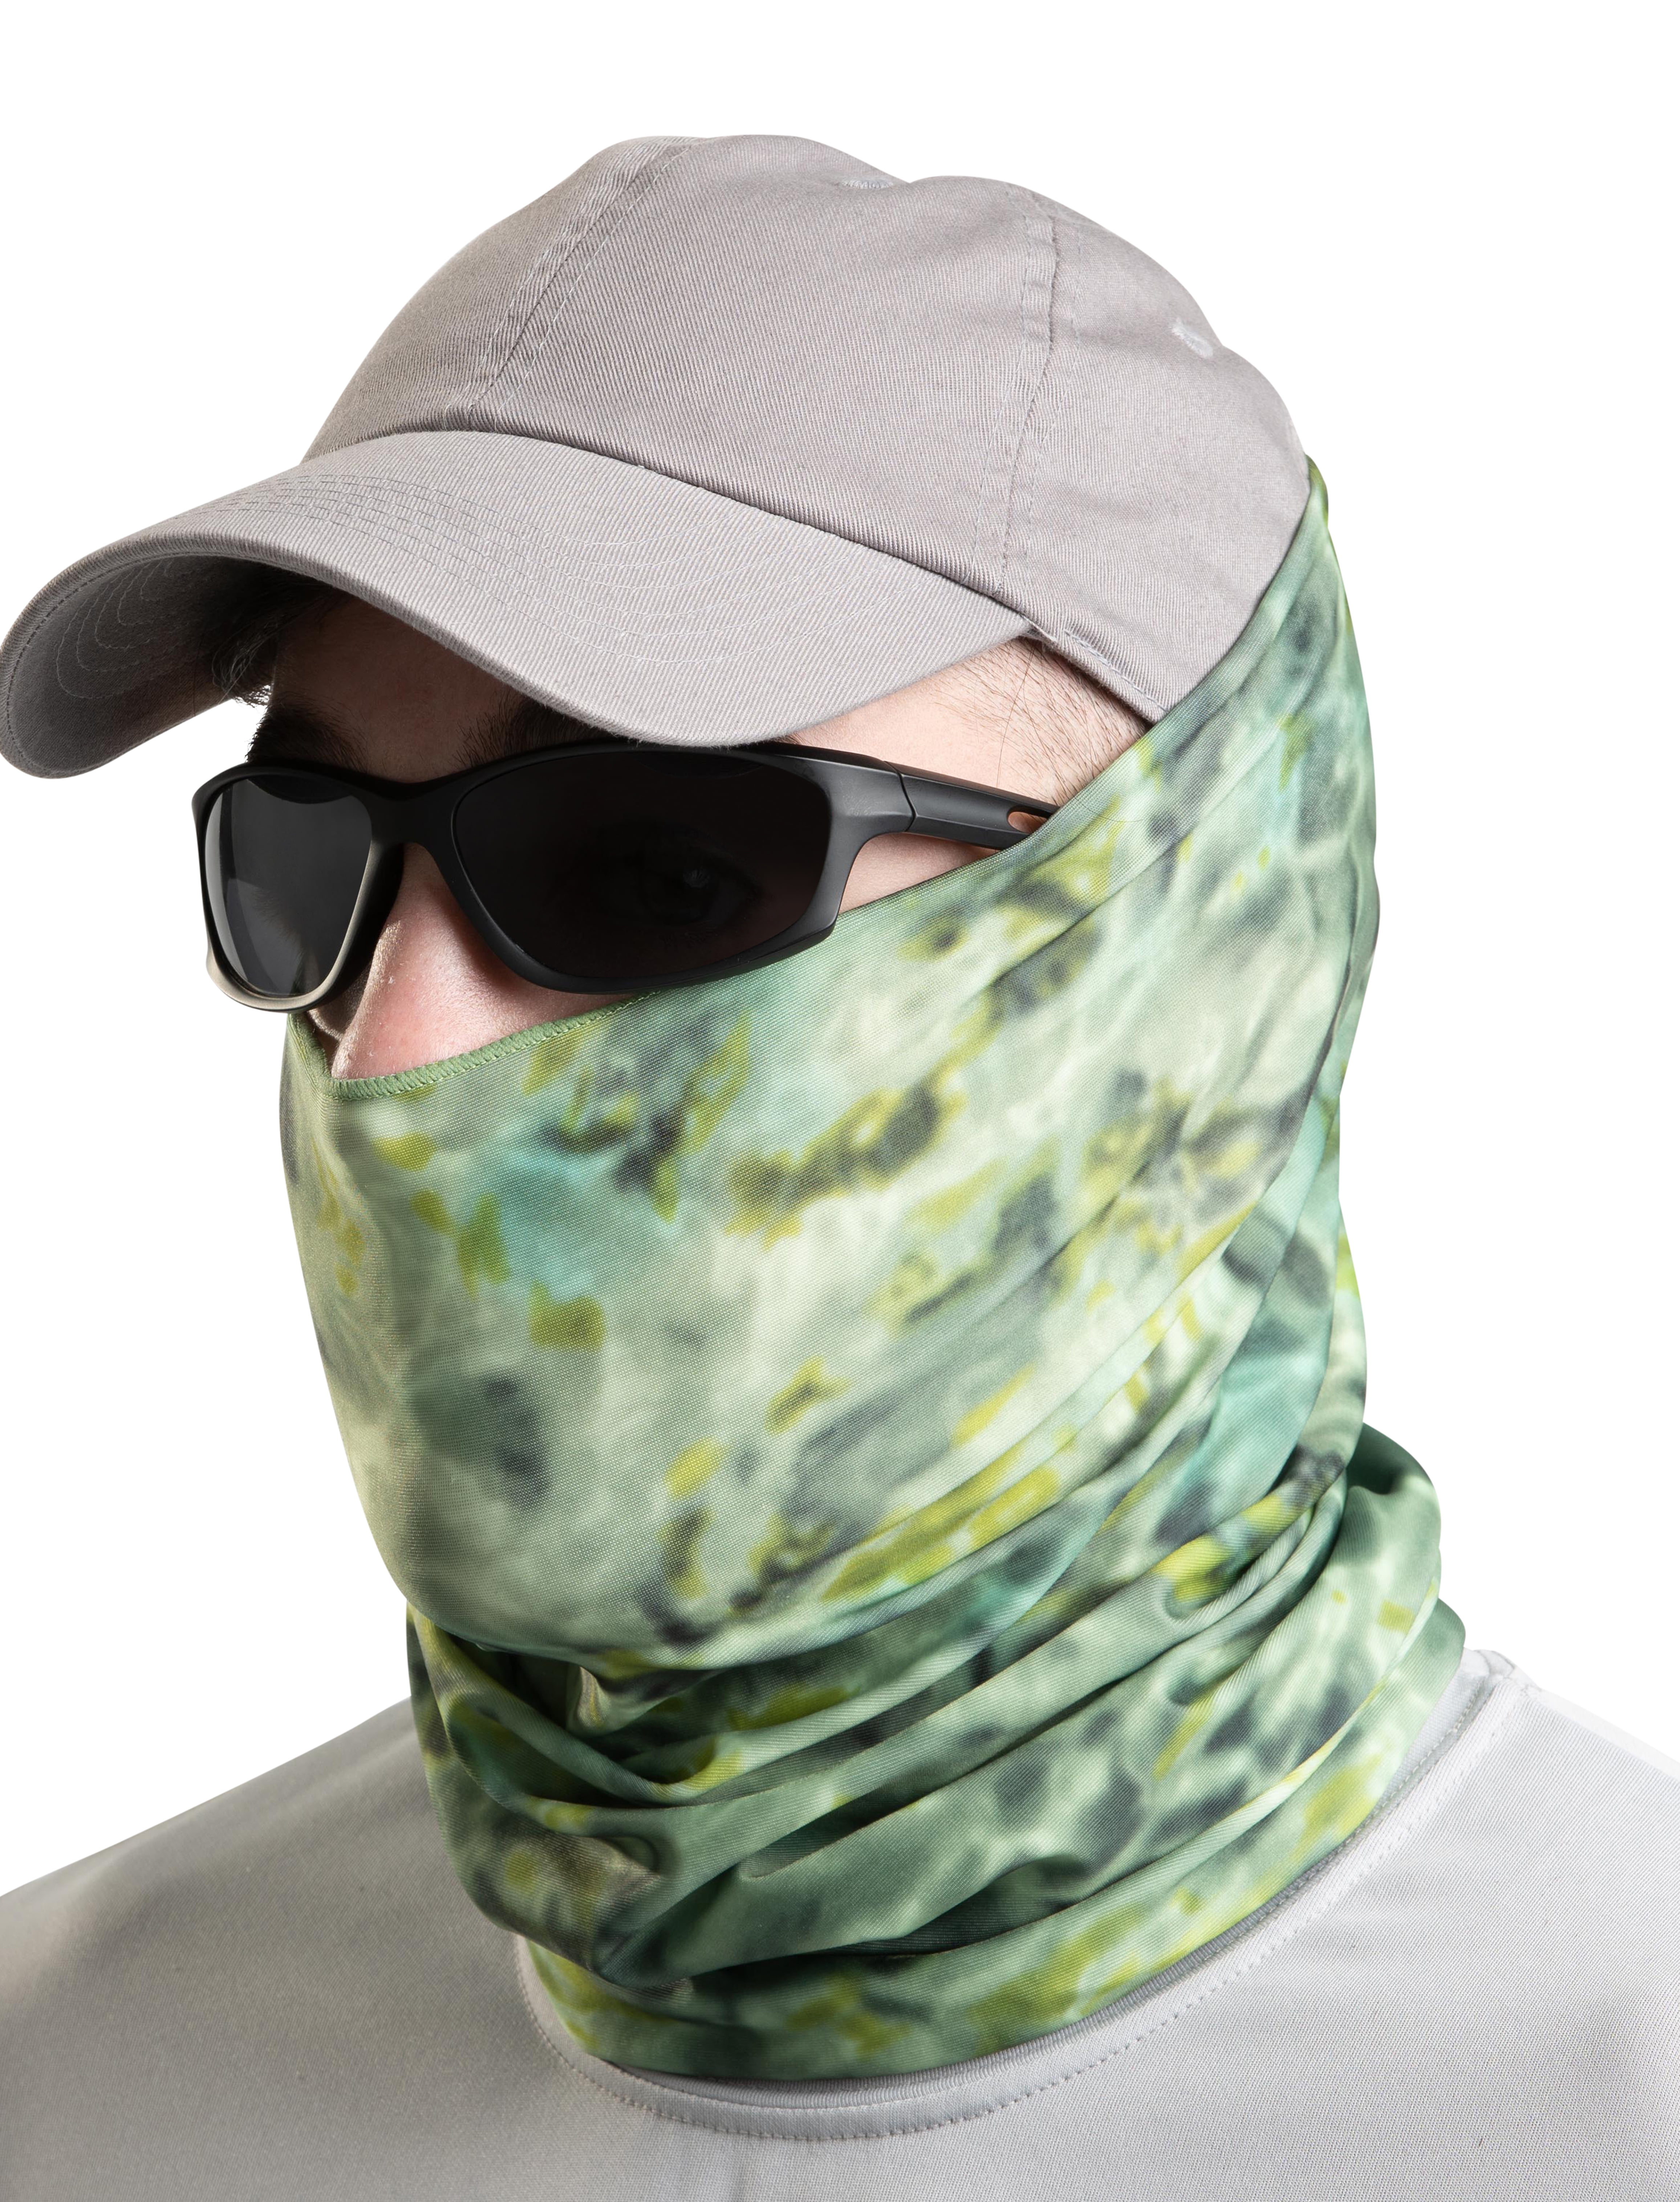 Galaxy Face Balaclava Scarf Neck Fishing Cover Sun Gaiter Headwear Bandana SPF40 